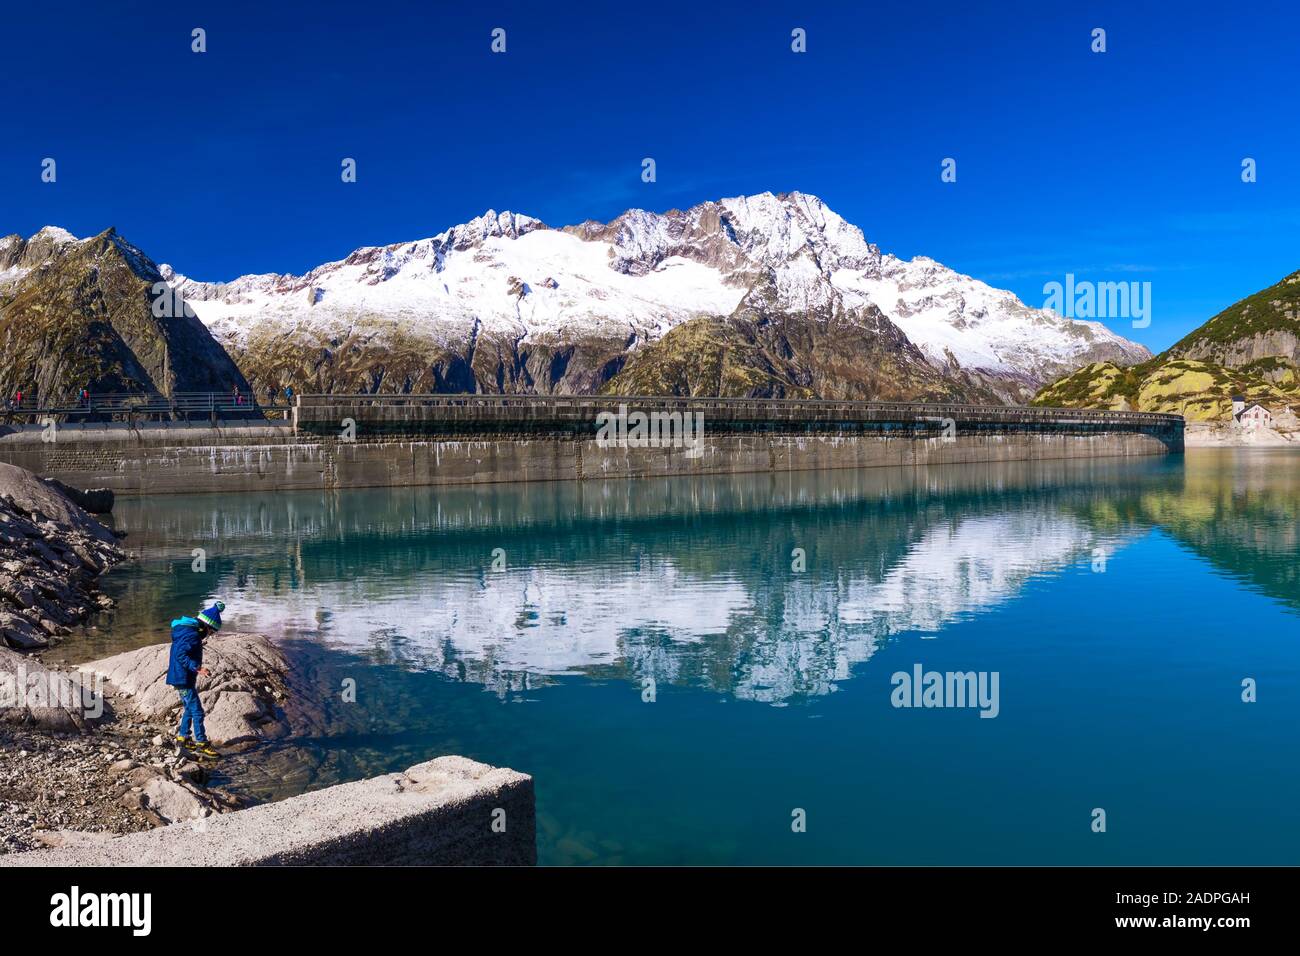 Gelmer Lake near by the Grimselpass in Swiss Alps, Gelmersee, Switzerland, Bernese Oberland, Switzerland. Stock Photo